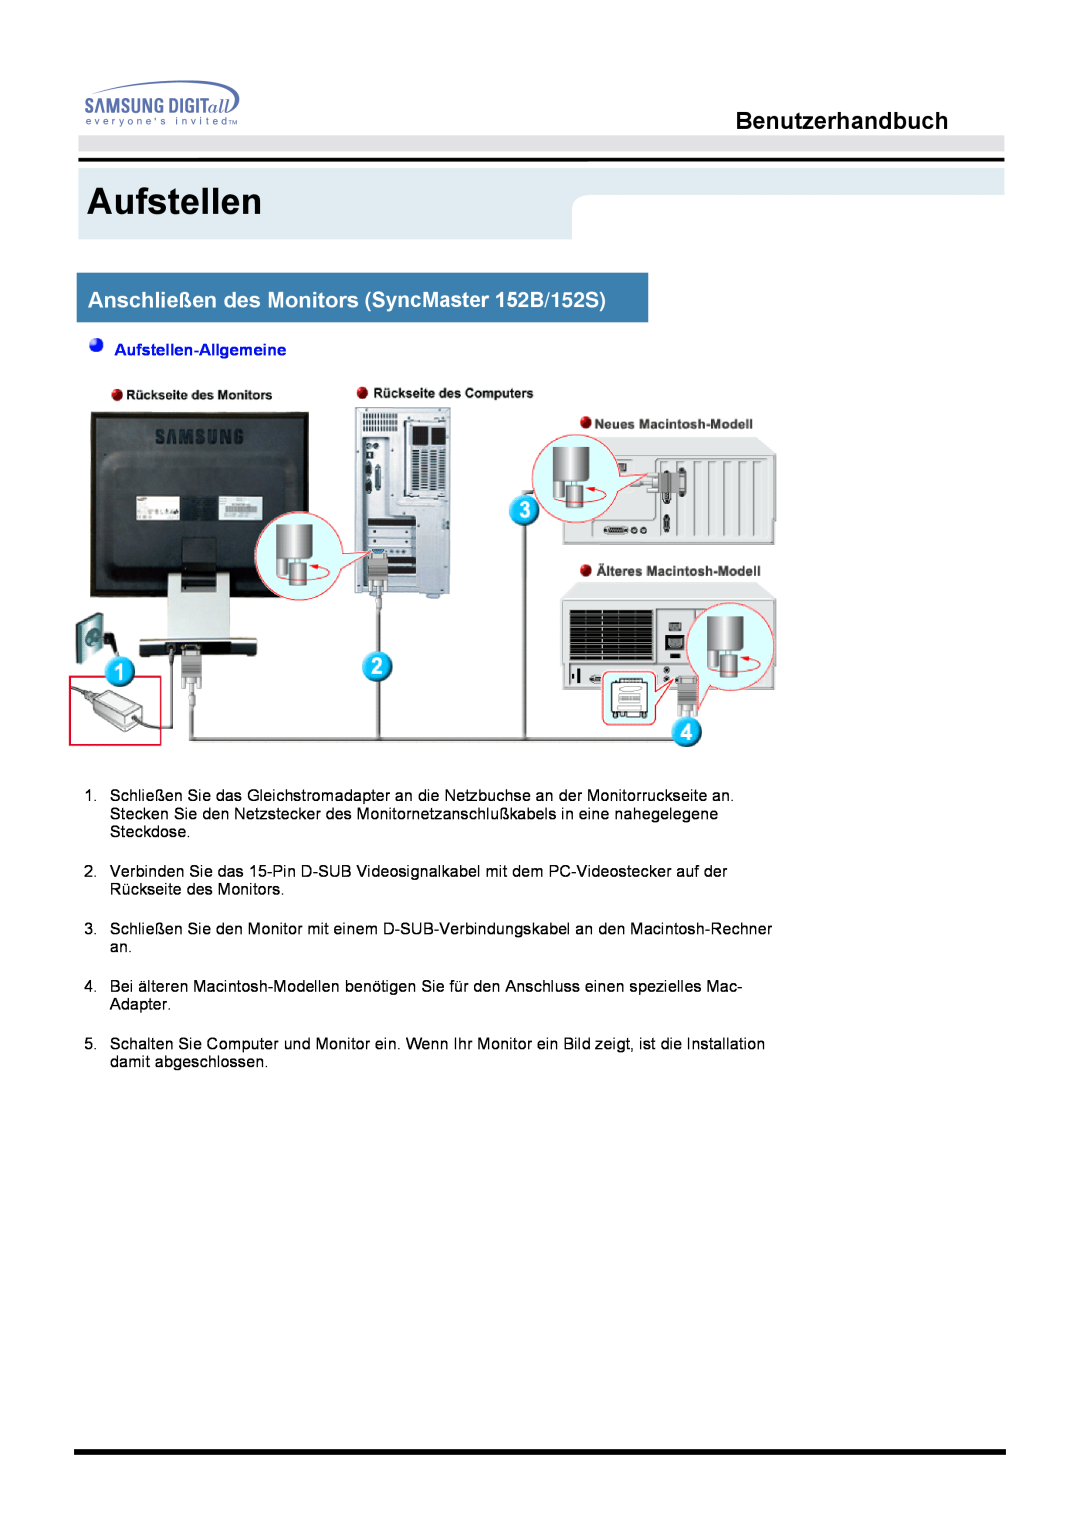 Samsung MO15ESDS/EDC manual Benutzerhandbuch, Anschließen des Monitors SyncMaster 152B/152S, Aufstellen-Allgemeine 